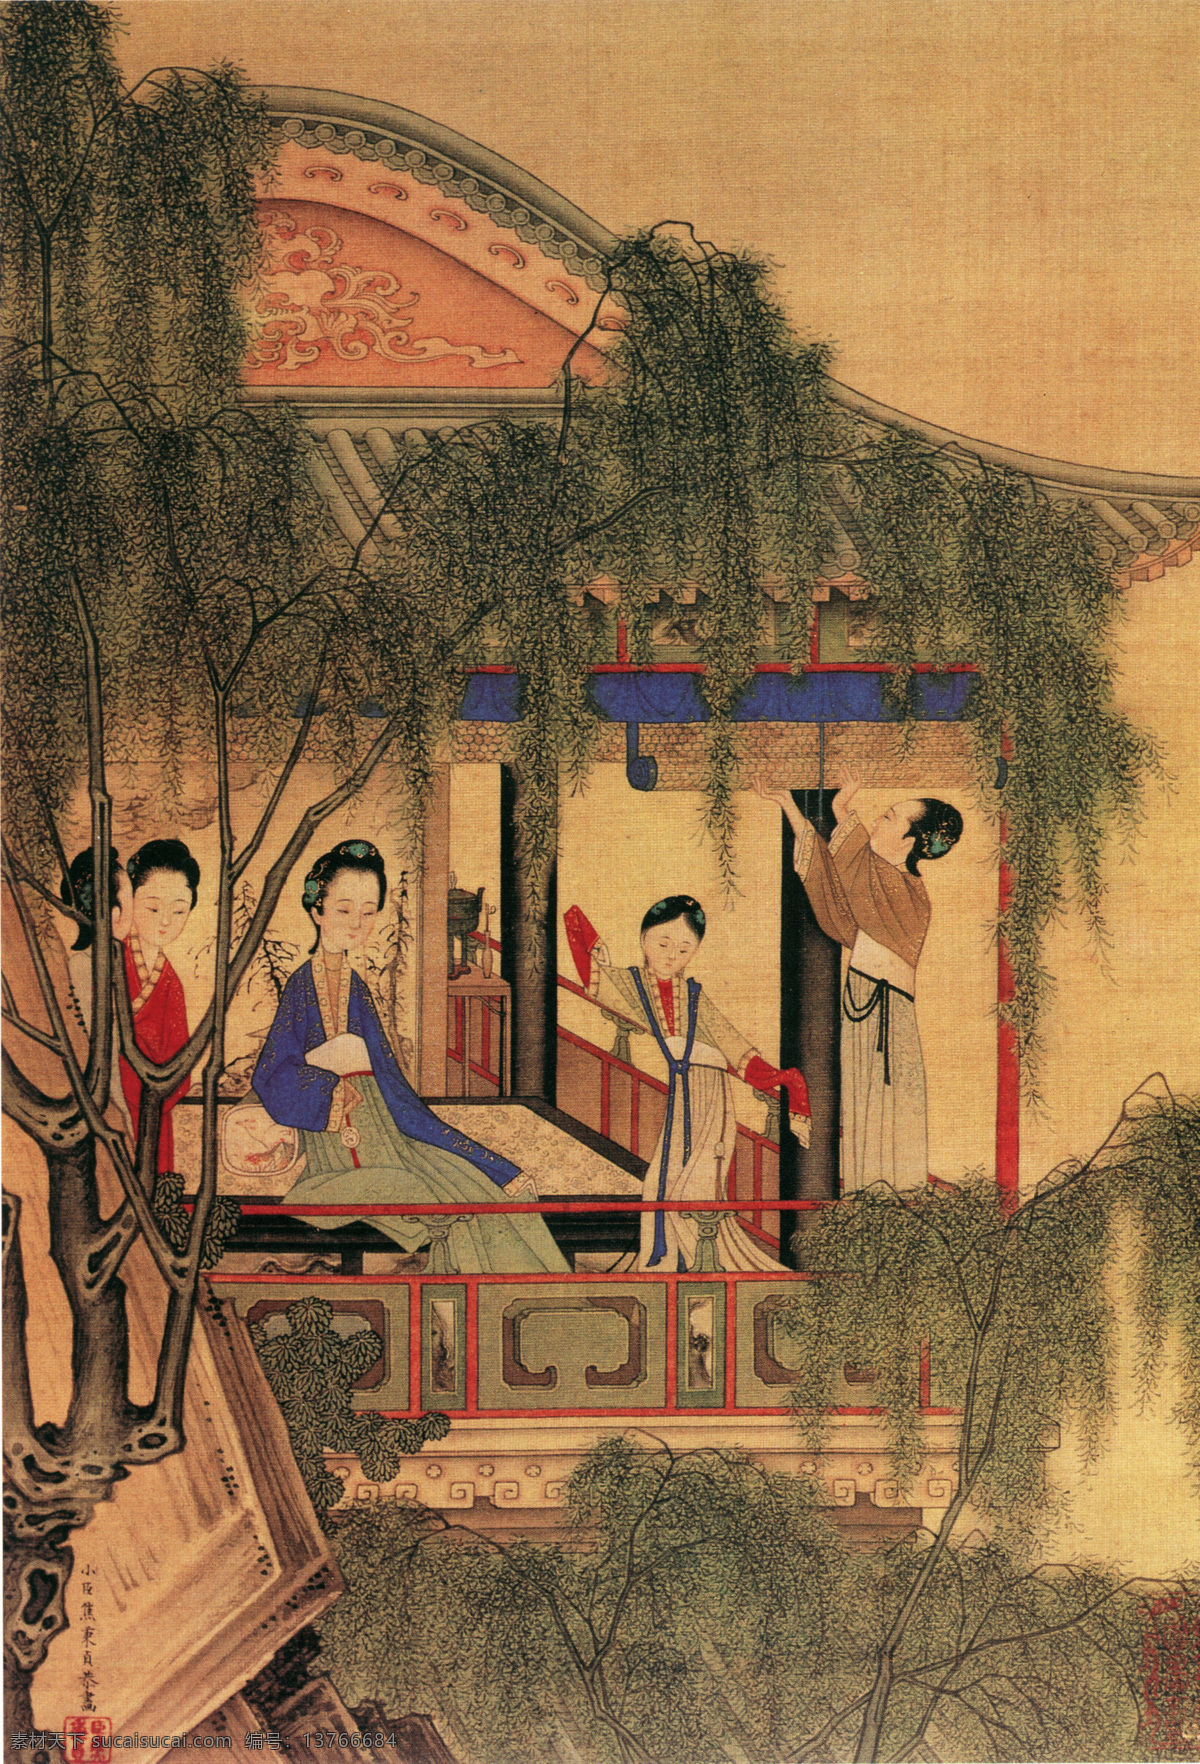 仕女图a 人物画 中国 古画 中国古画 设计素材 人物名画 古典藏画 书画美术 棕色